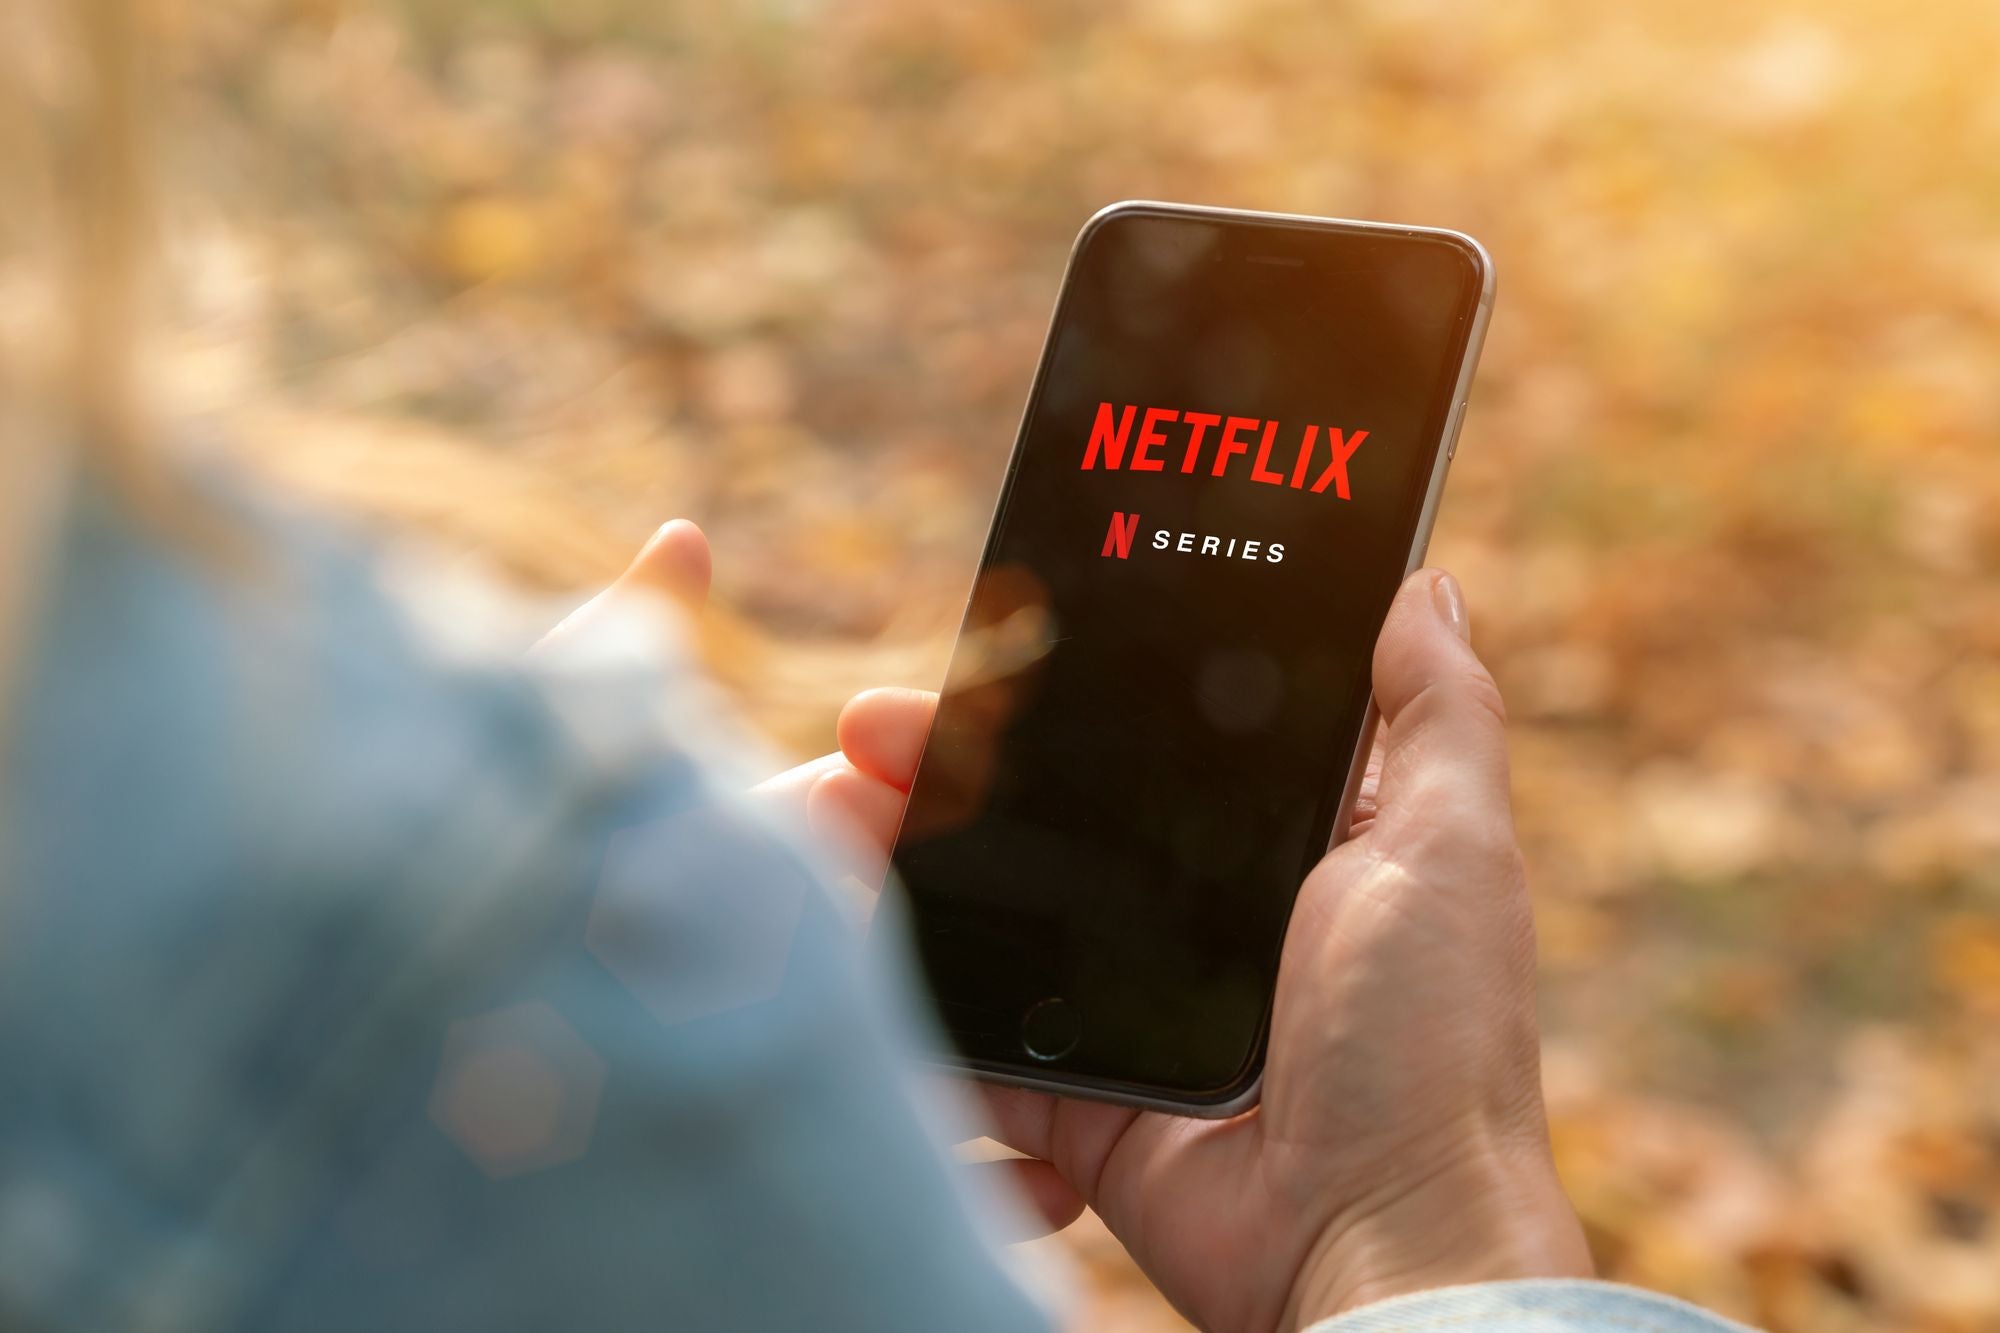 Netflix gana 15.7 millones de suscriptores gracias al confinamiento